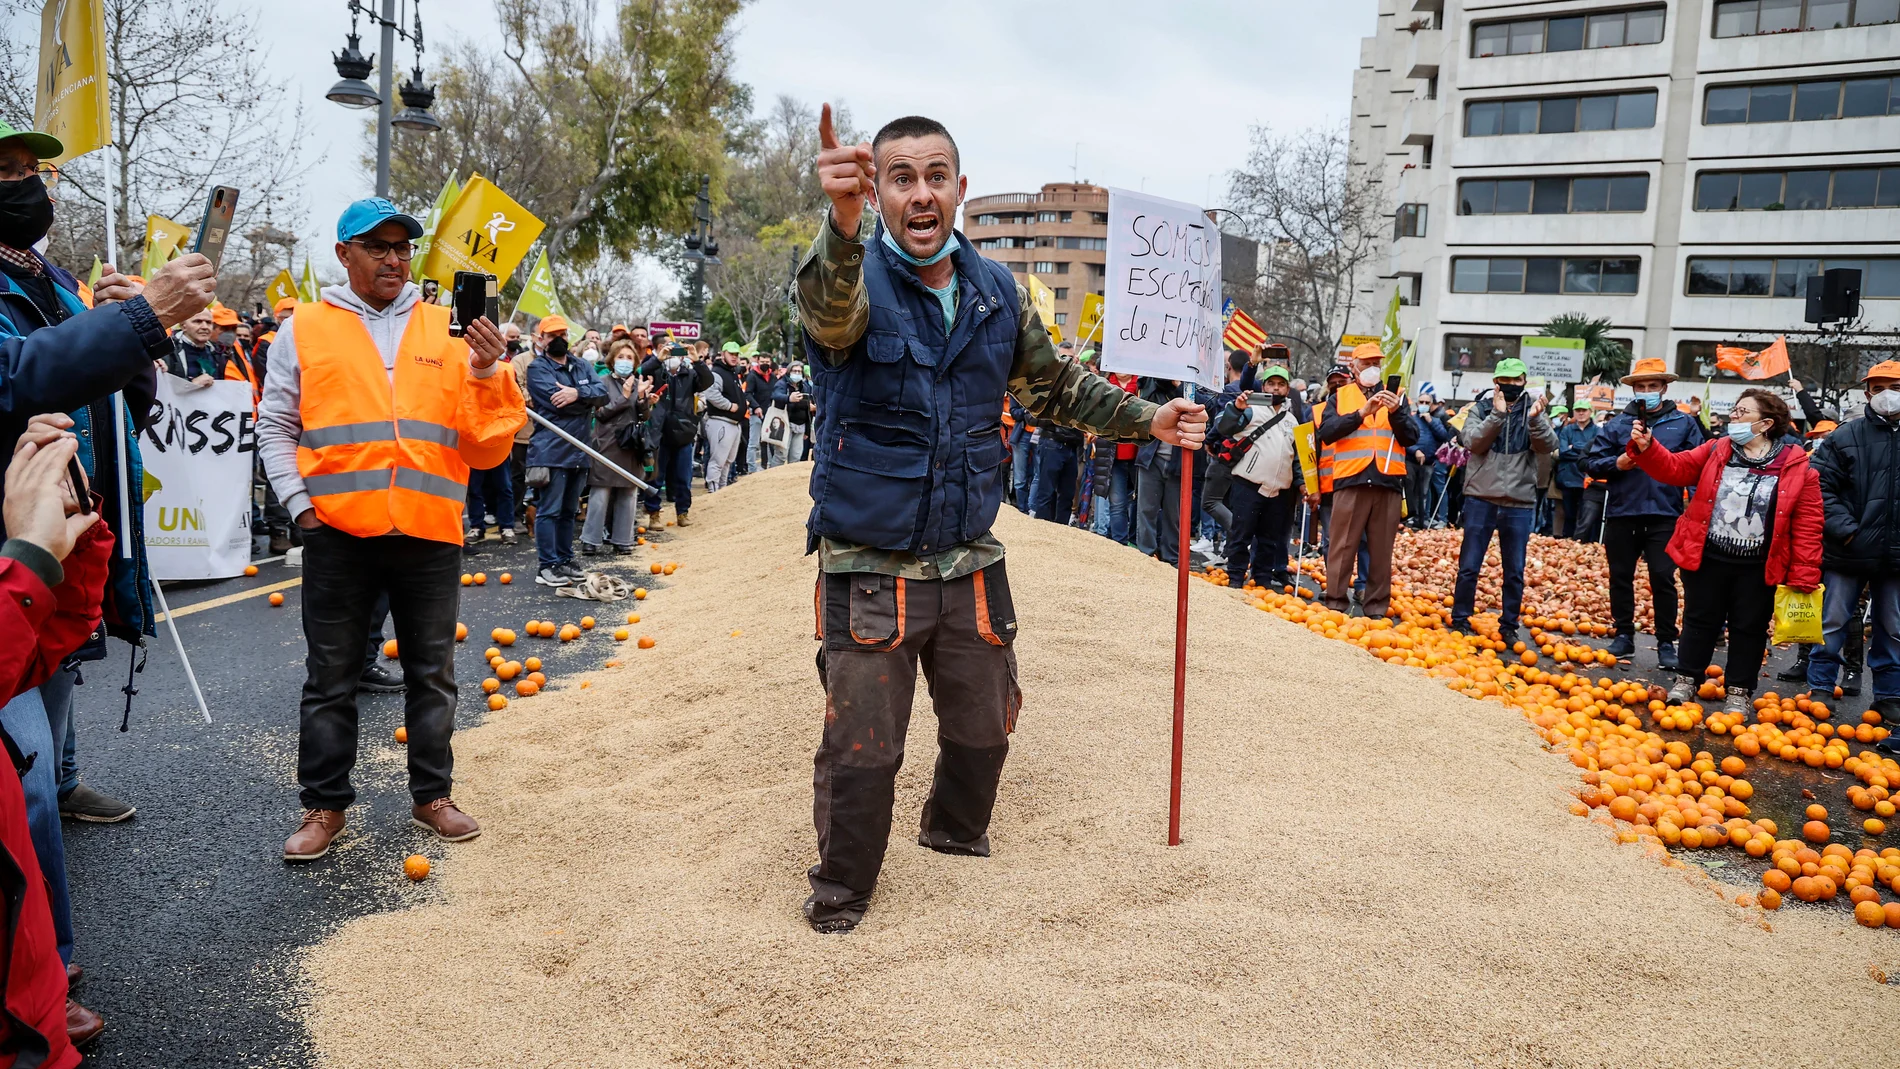 Varios agricultores tiran naranjas y cereal como protesta, en la concentración de ayer por la “supervivencia” del campo valenciano